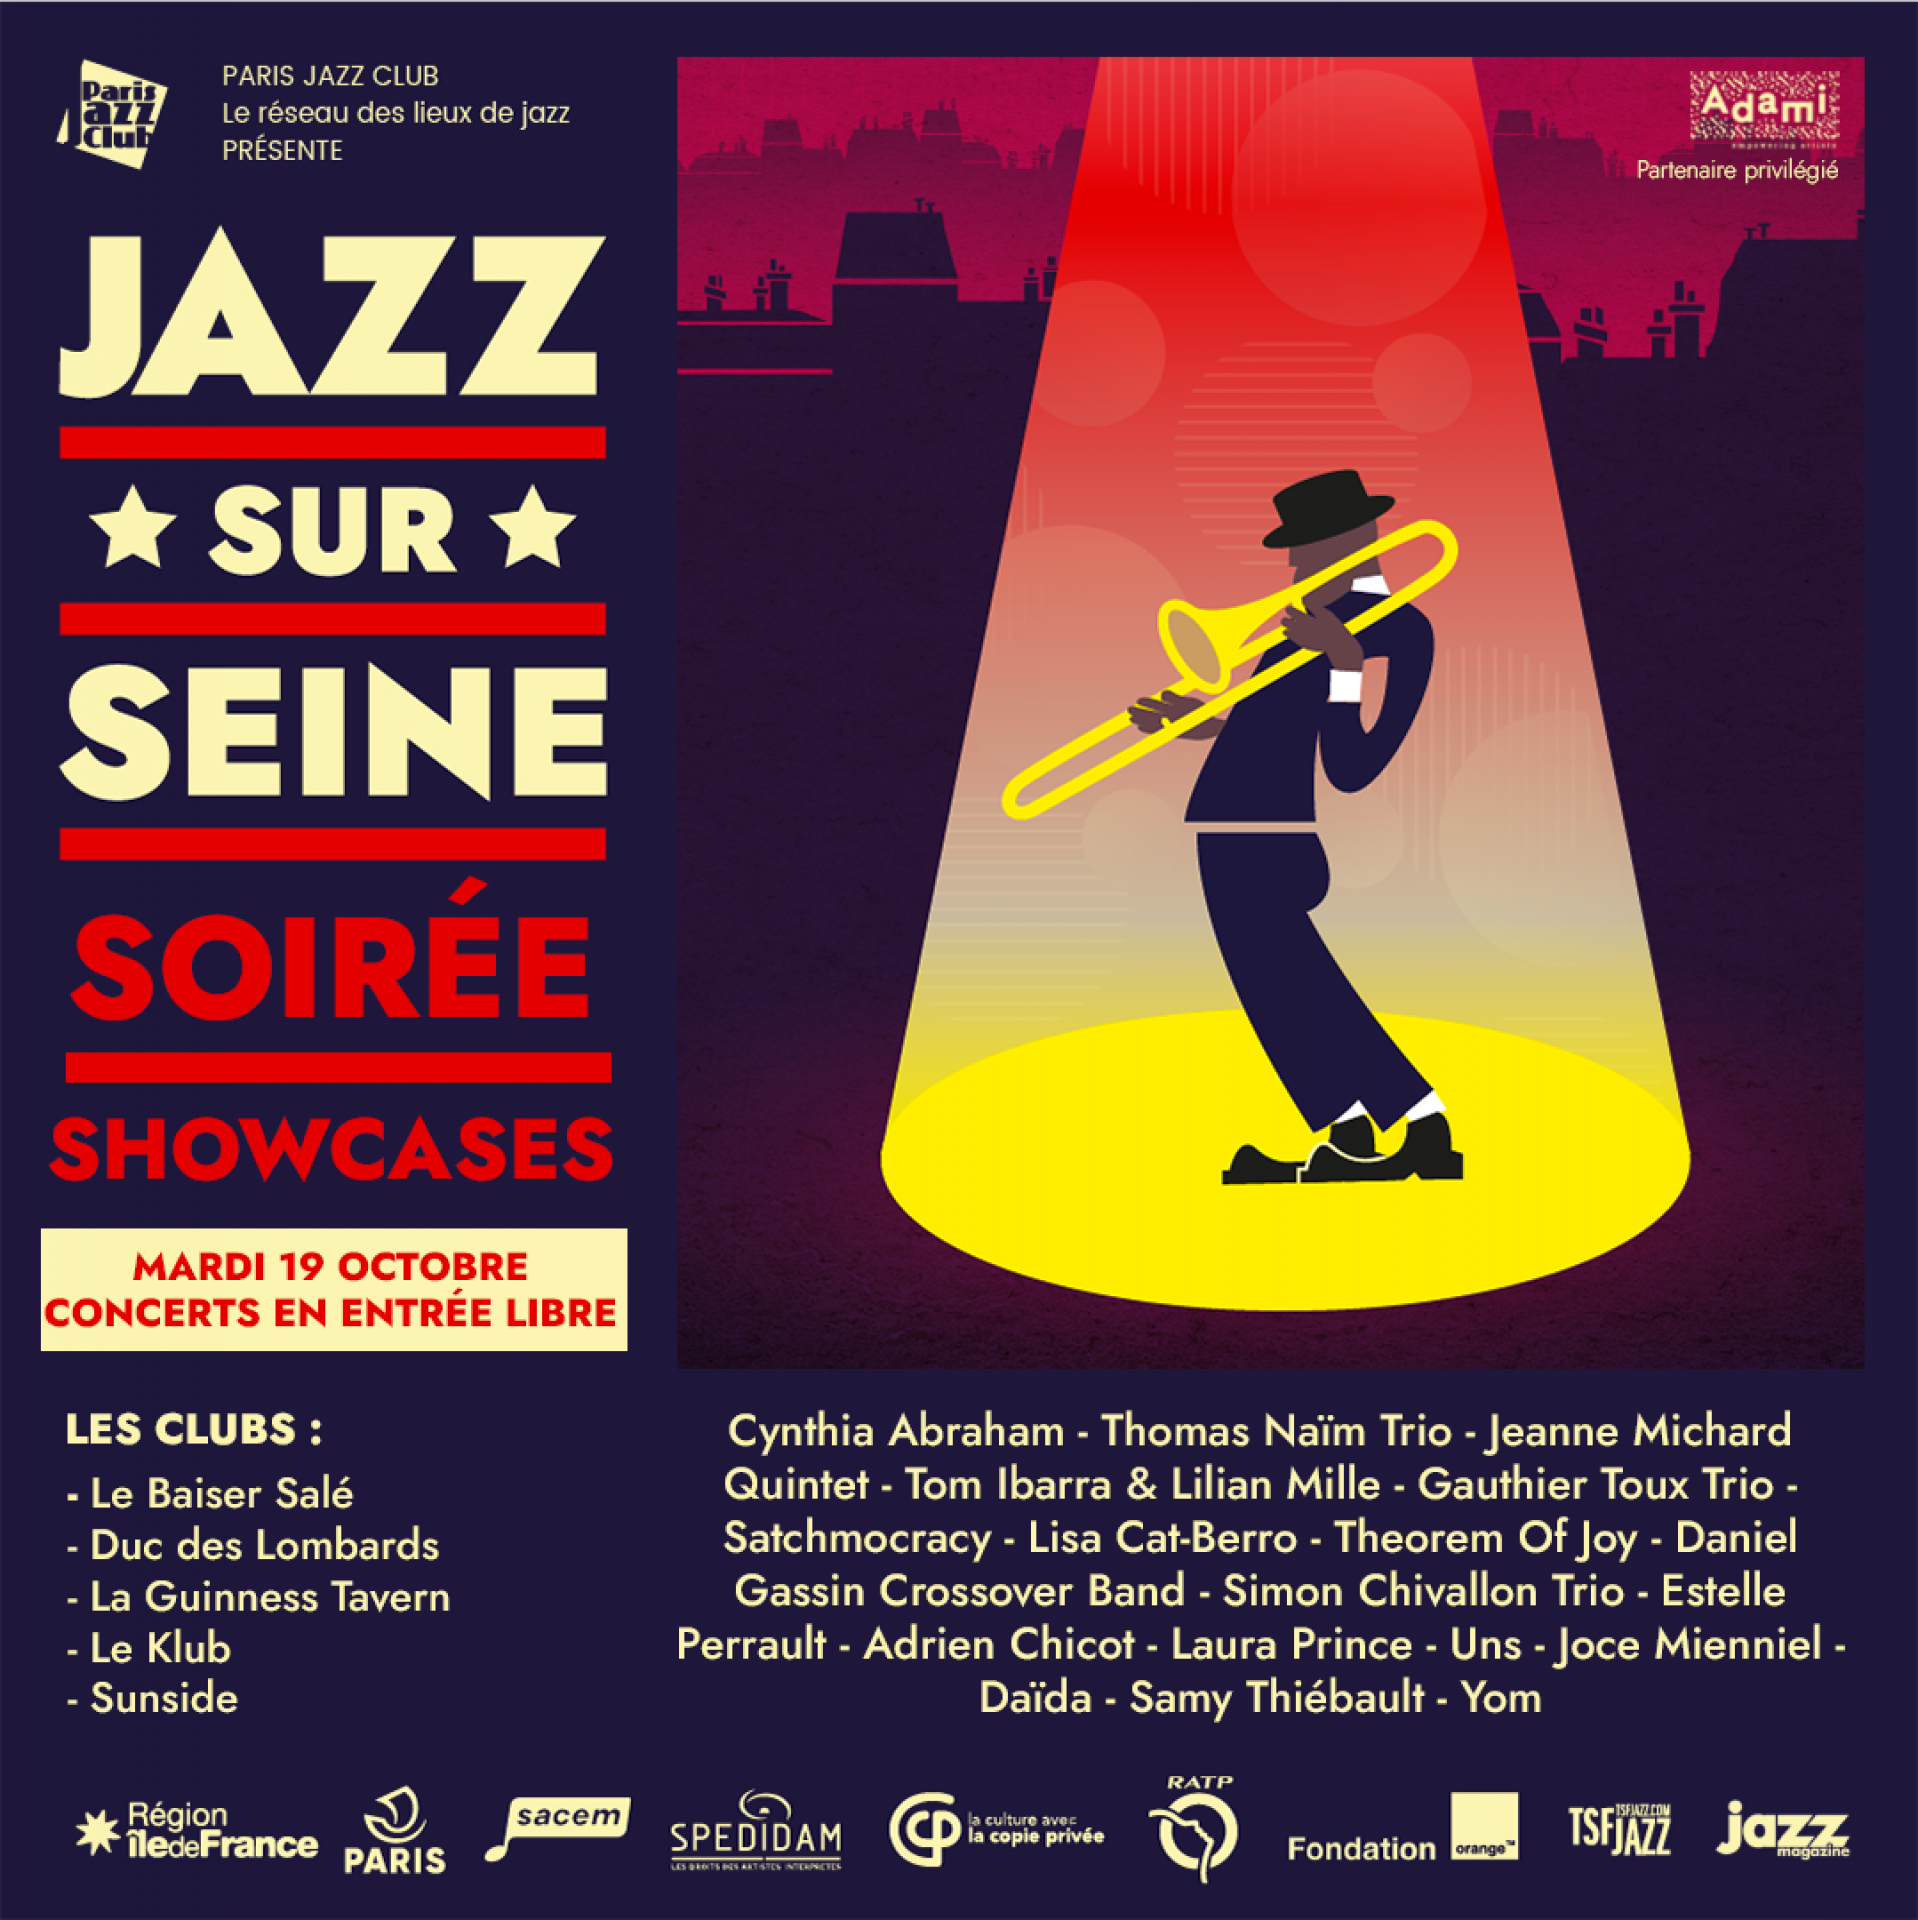 Soirée Showcases - Tuesday, October 19
